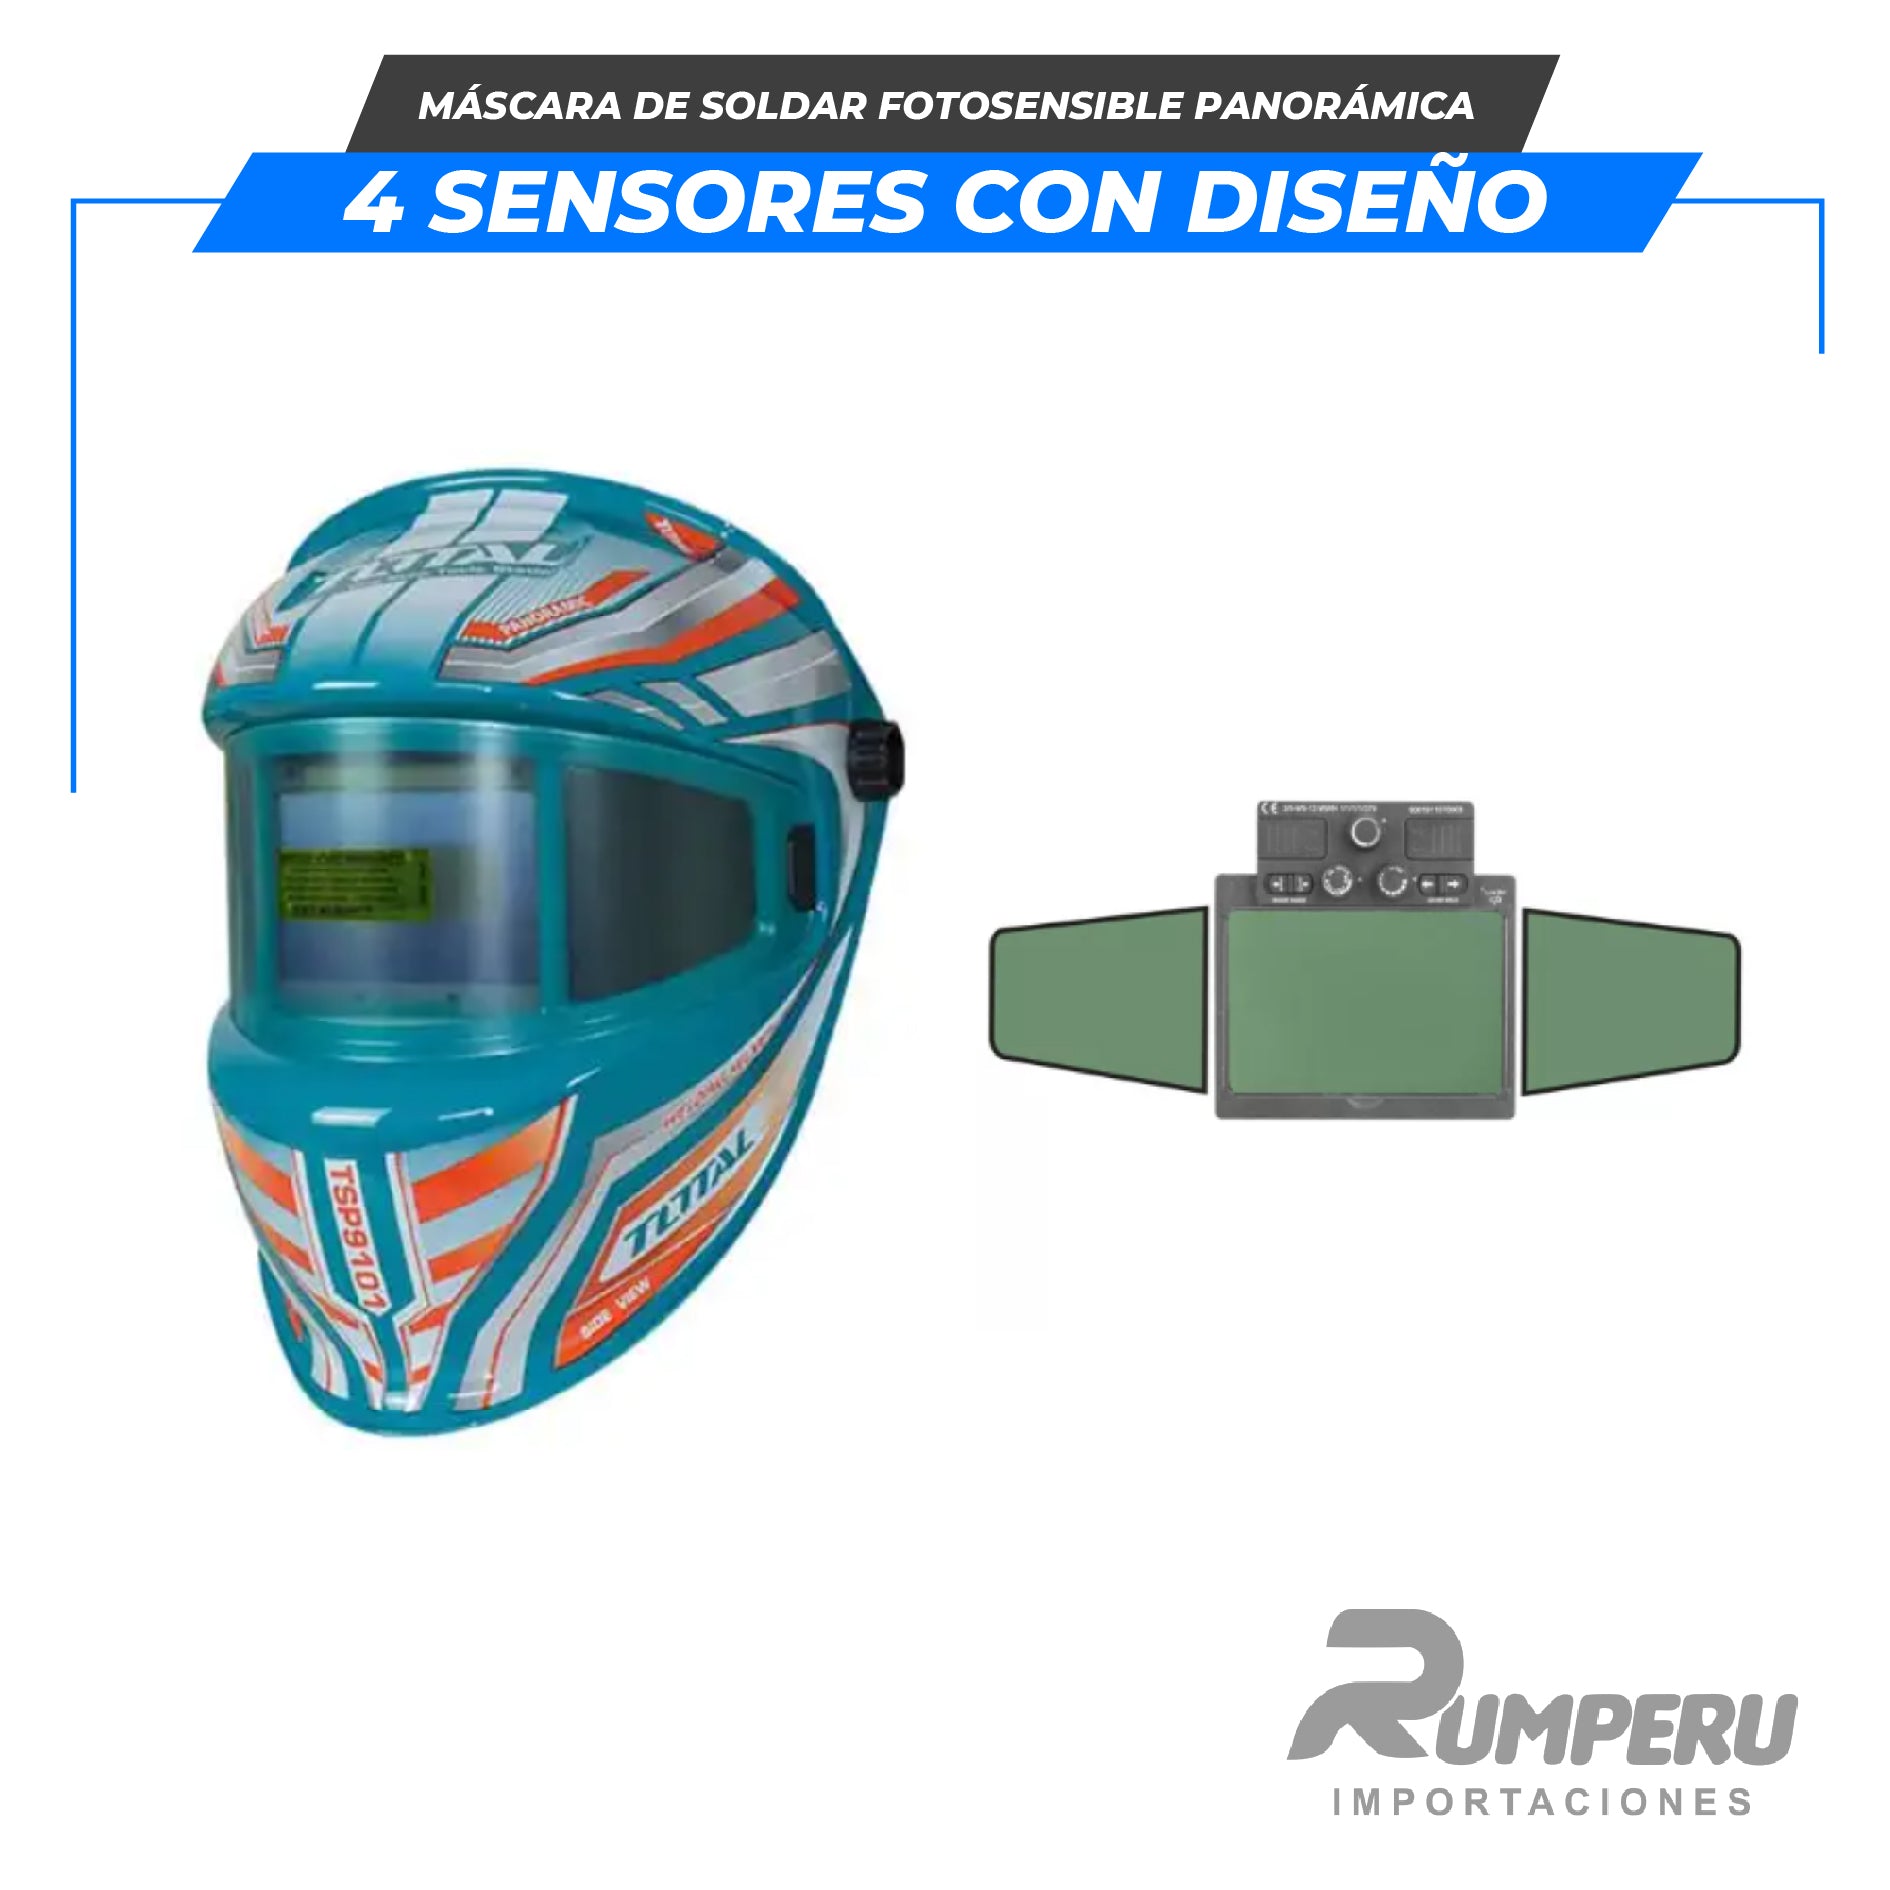 Máscara de soldar fotosensible Panorámica 4 sensores con DISEÑO